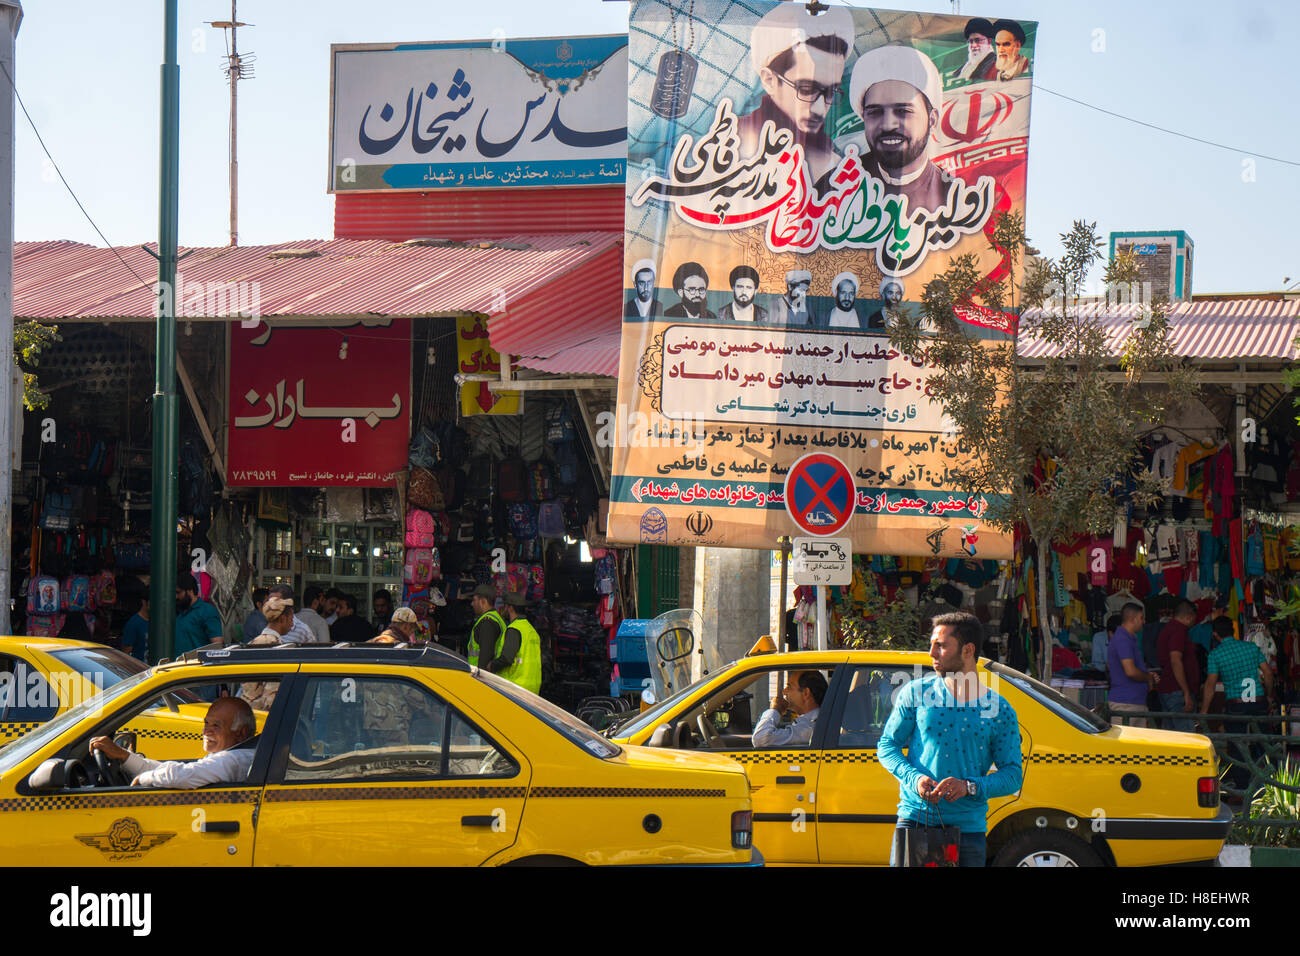 Scène de rue avec l'affiche de la religieuse, Qom, Iran, Moyen-Orient Banque D'Images